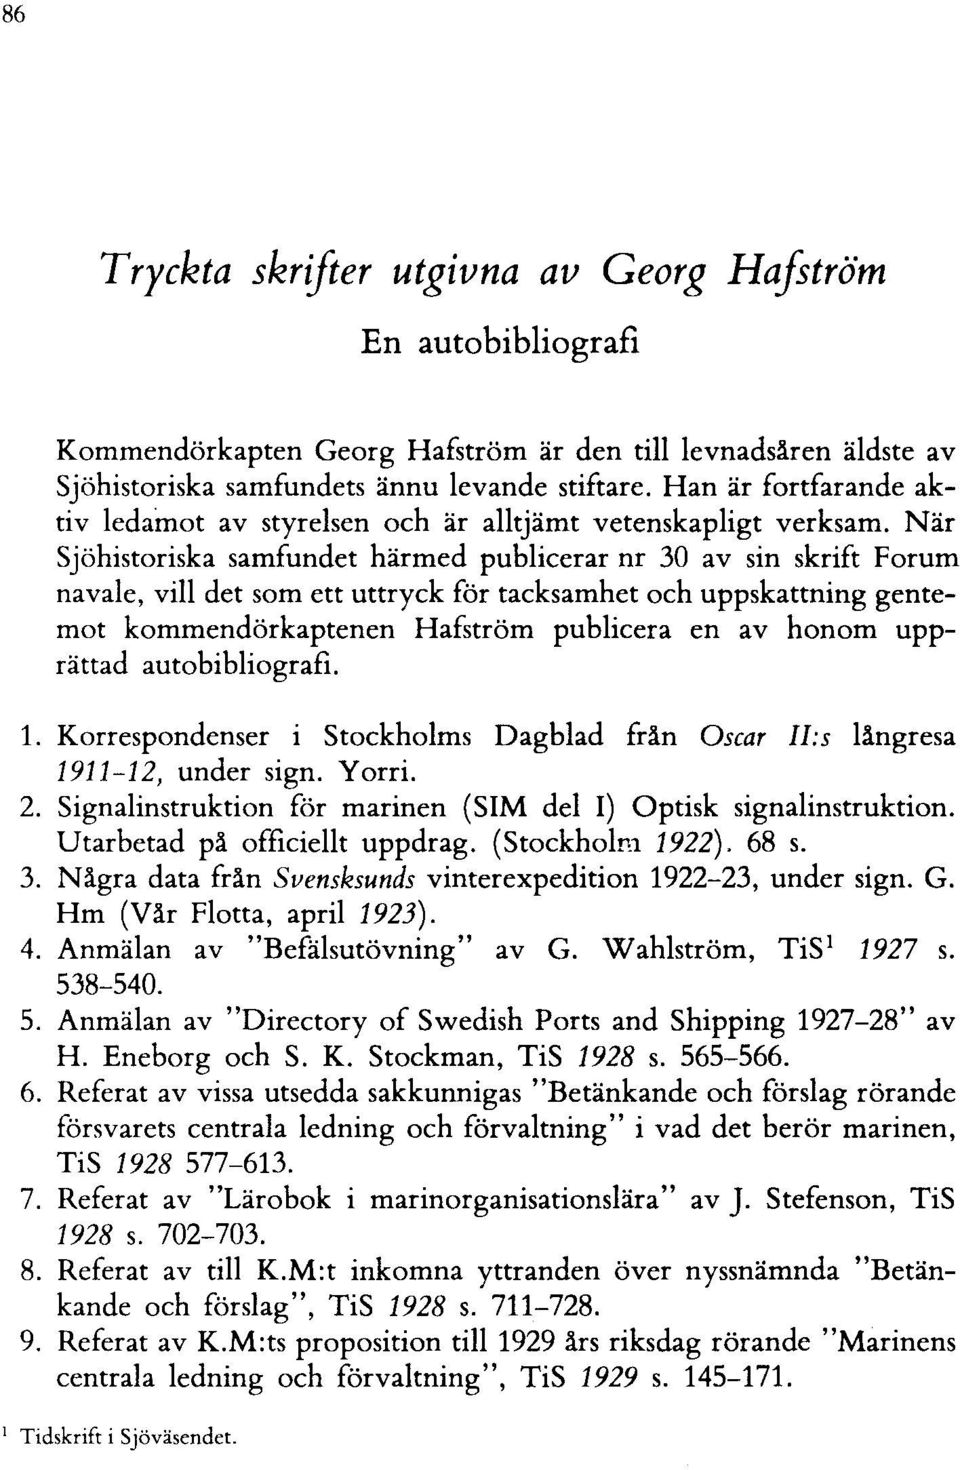 När Sjöhistoriska samfundet härmed publicerar nr 30 av sin skrift Forum navale, vill det som ett uttryck för tacksamhet och uppskattning gentemot kommendörkaptenen Hafström publicera en av honom